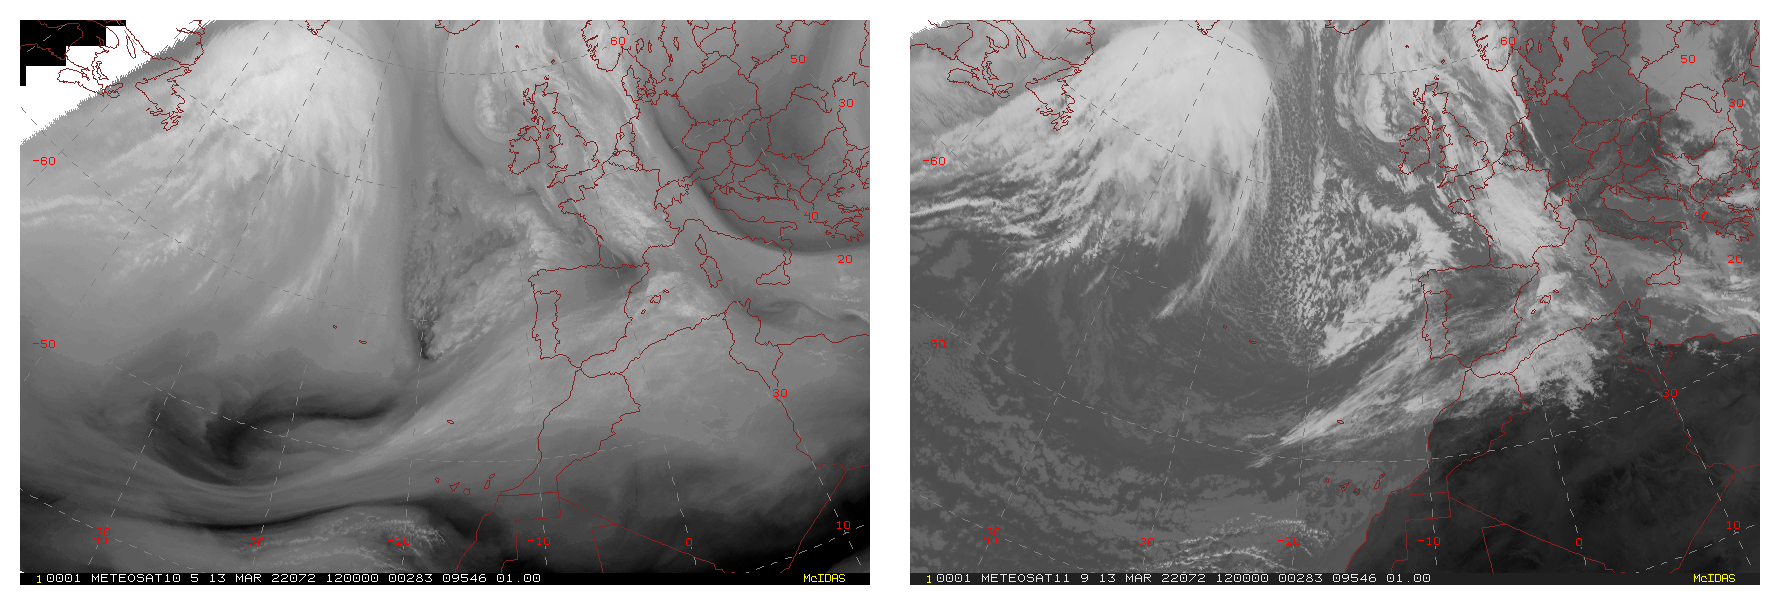 Formación y evolución de la borrasca Celia. Loop de imágenes cada tres horas de los canales vapor de agua (izquierda) e infrarrojo (derecha) del satélite Meteosat entre las 12 UTC del día 13 y las 21 UTC del día 15